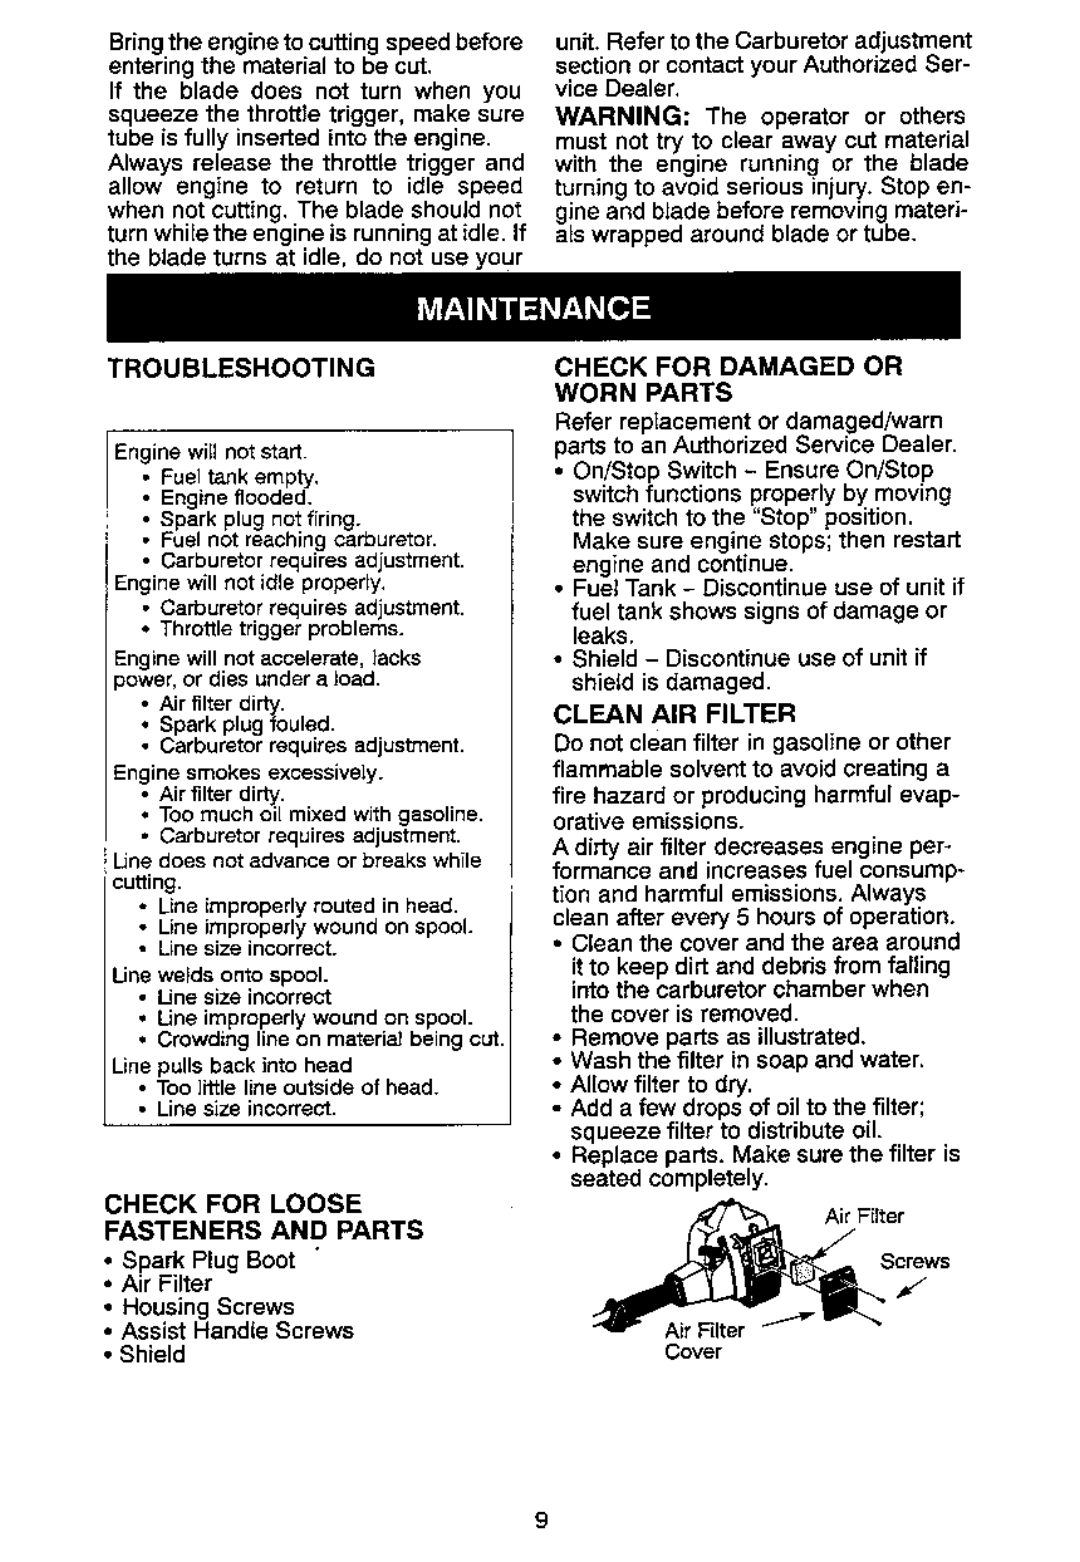 Poulan PT7000 manual 